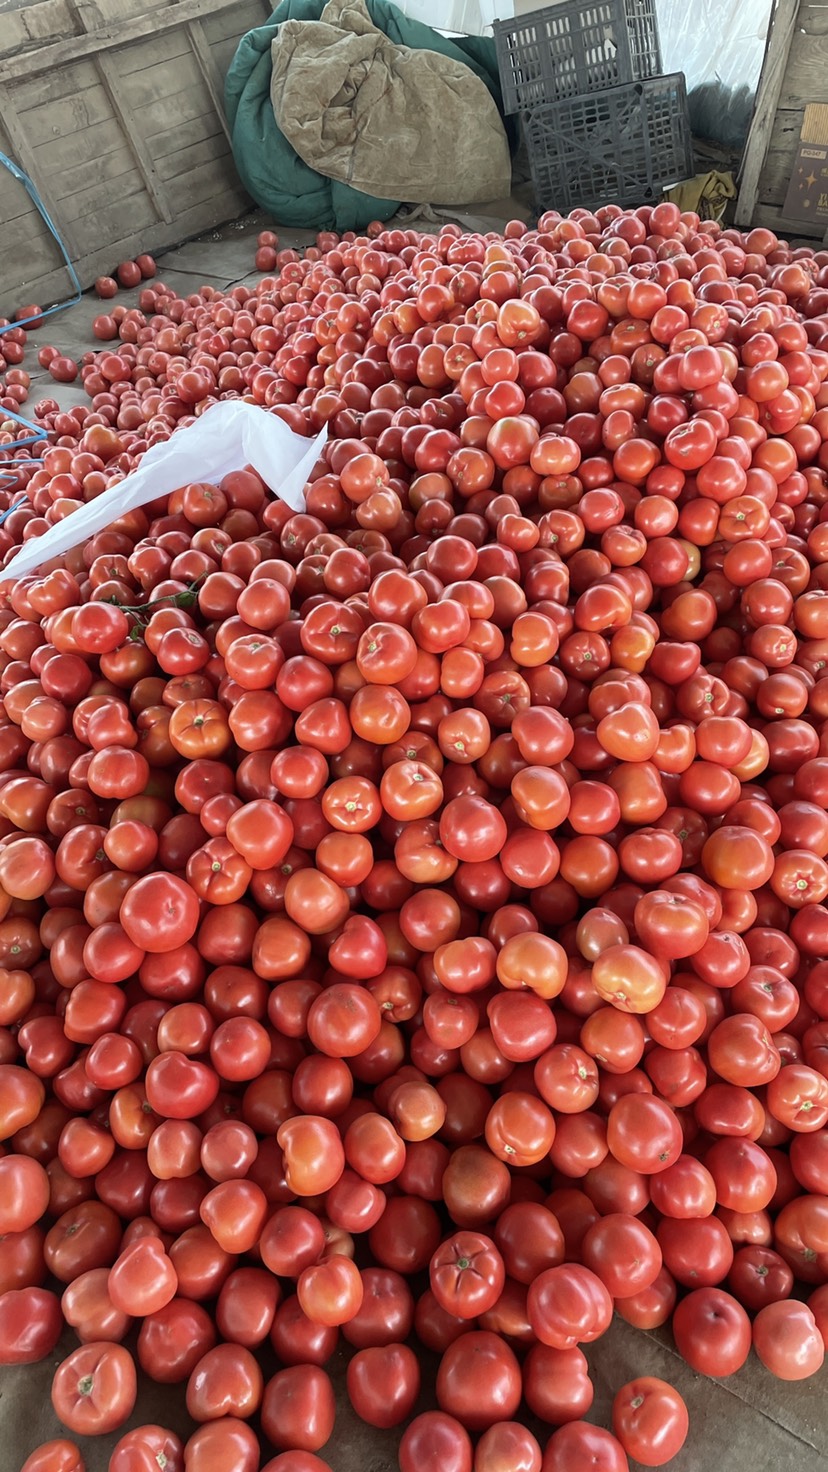 费县临沂费县硬粉西红柿 番茄质量好 价格低 产地基地大量上市